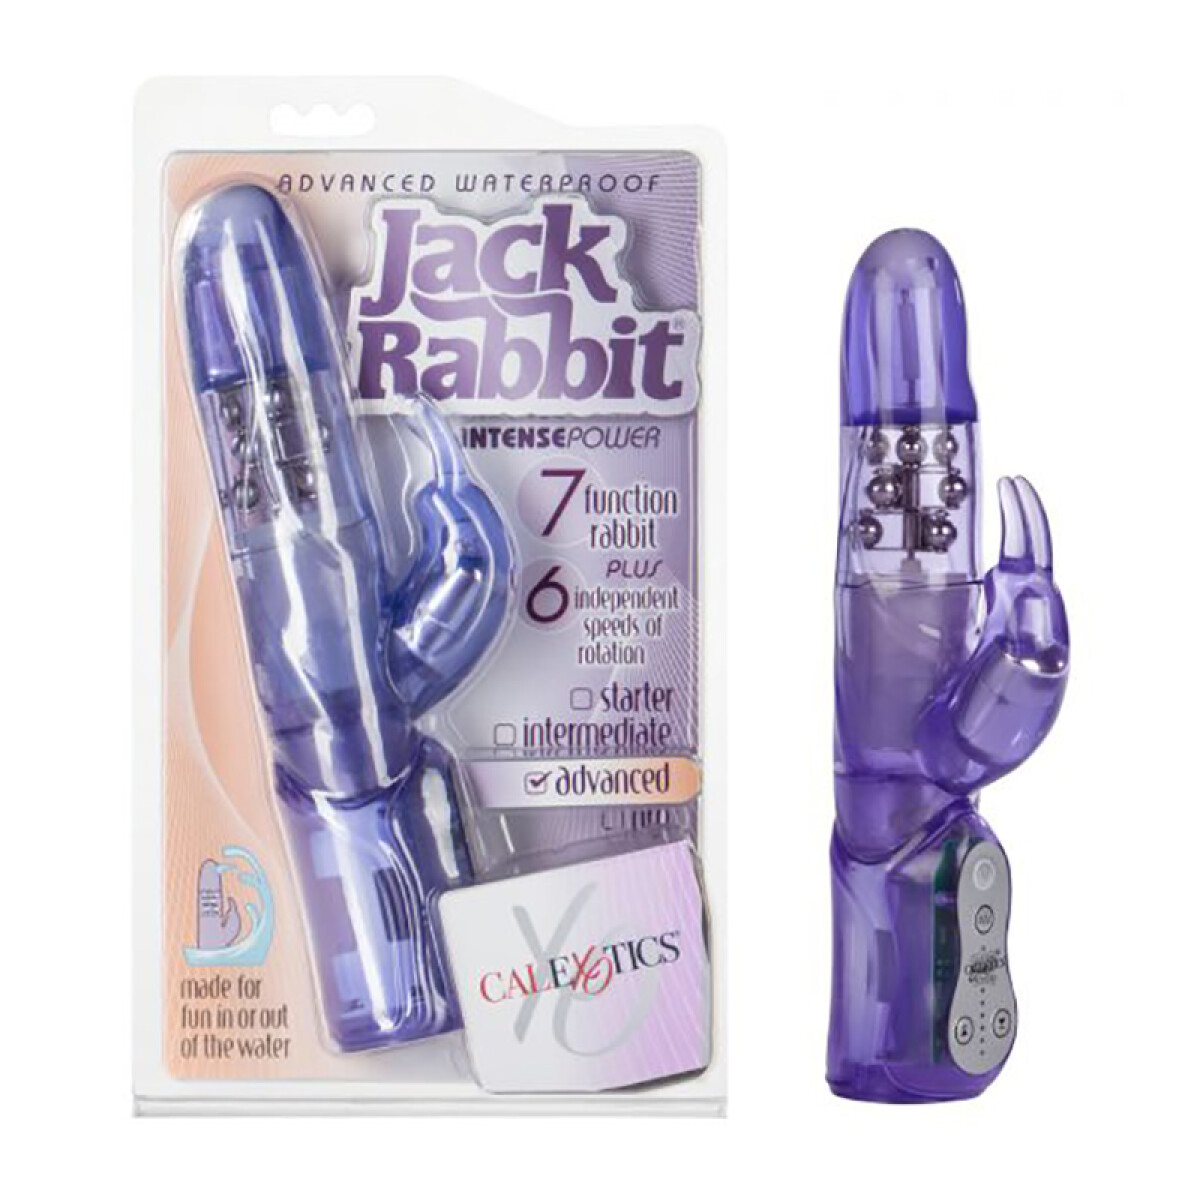 Jack Rabbit Advanced Waterproof Vibrador Rotador 